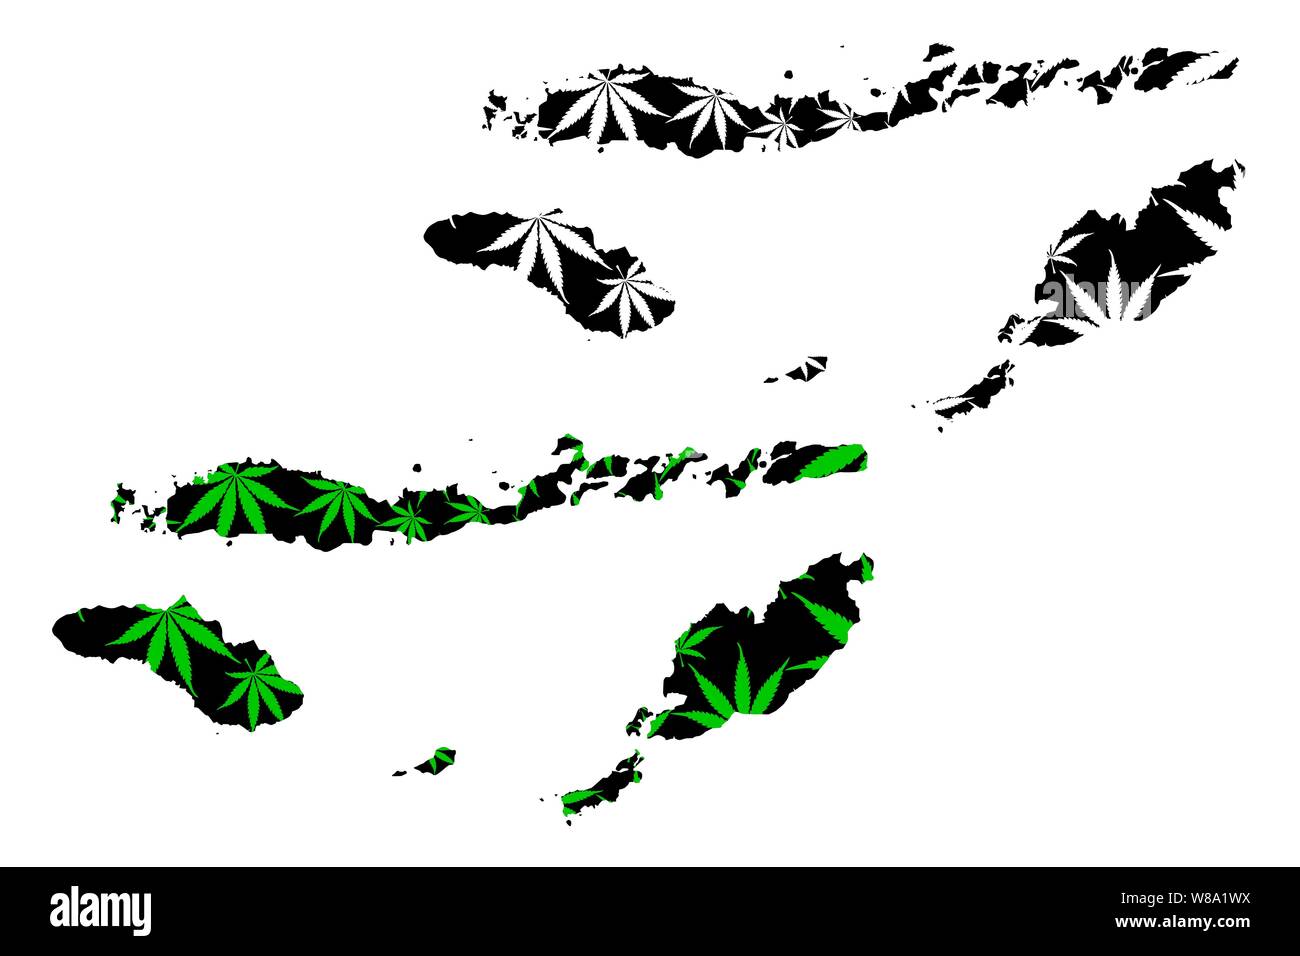 Nusa Tenggara Timur (Unterteilungen von Indonesien, Provinzen) Karte cannabis Blatt grün und schwarz, Nusa Tenggara Timur (Kleine Sunda Inseln) ma ausgelegt ist Stock Vektor